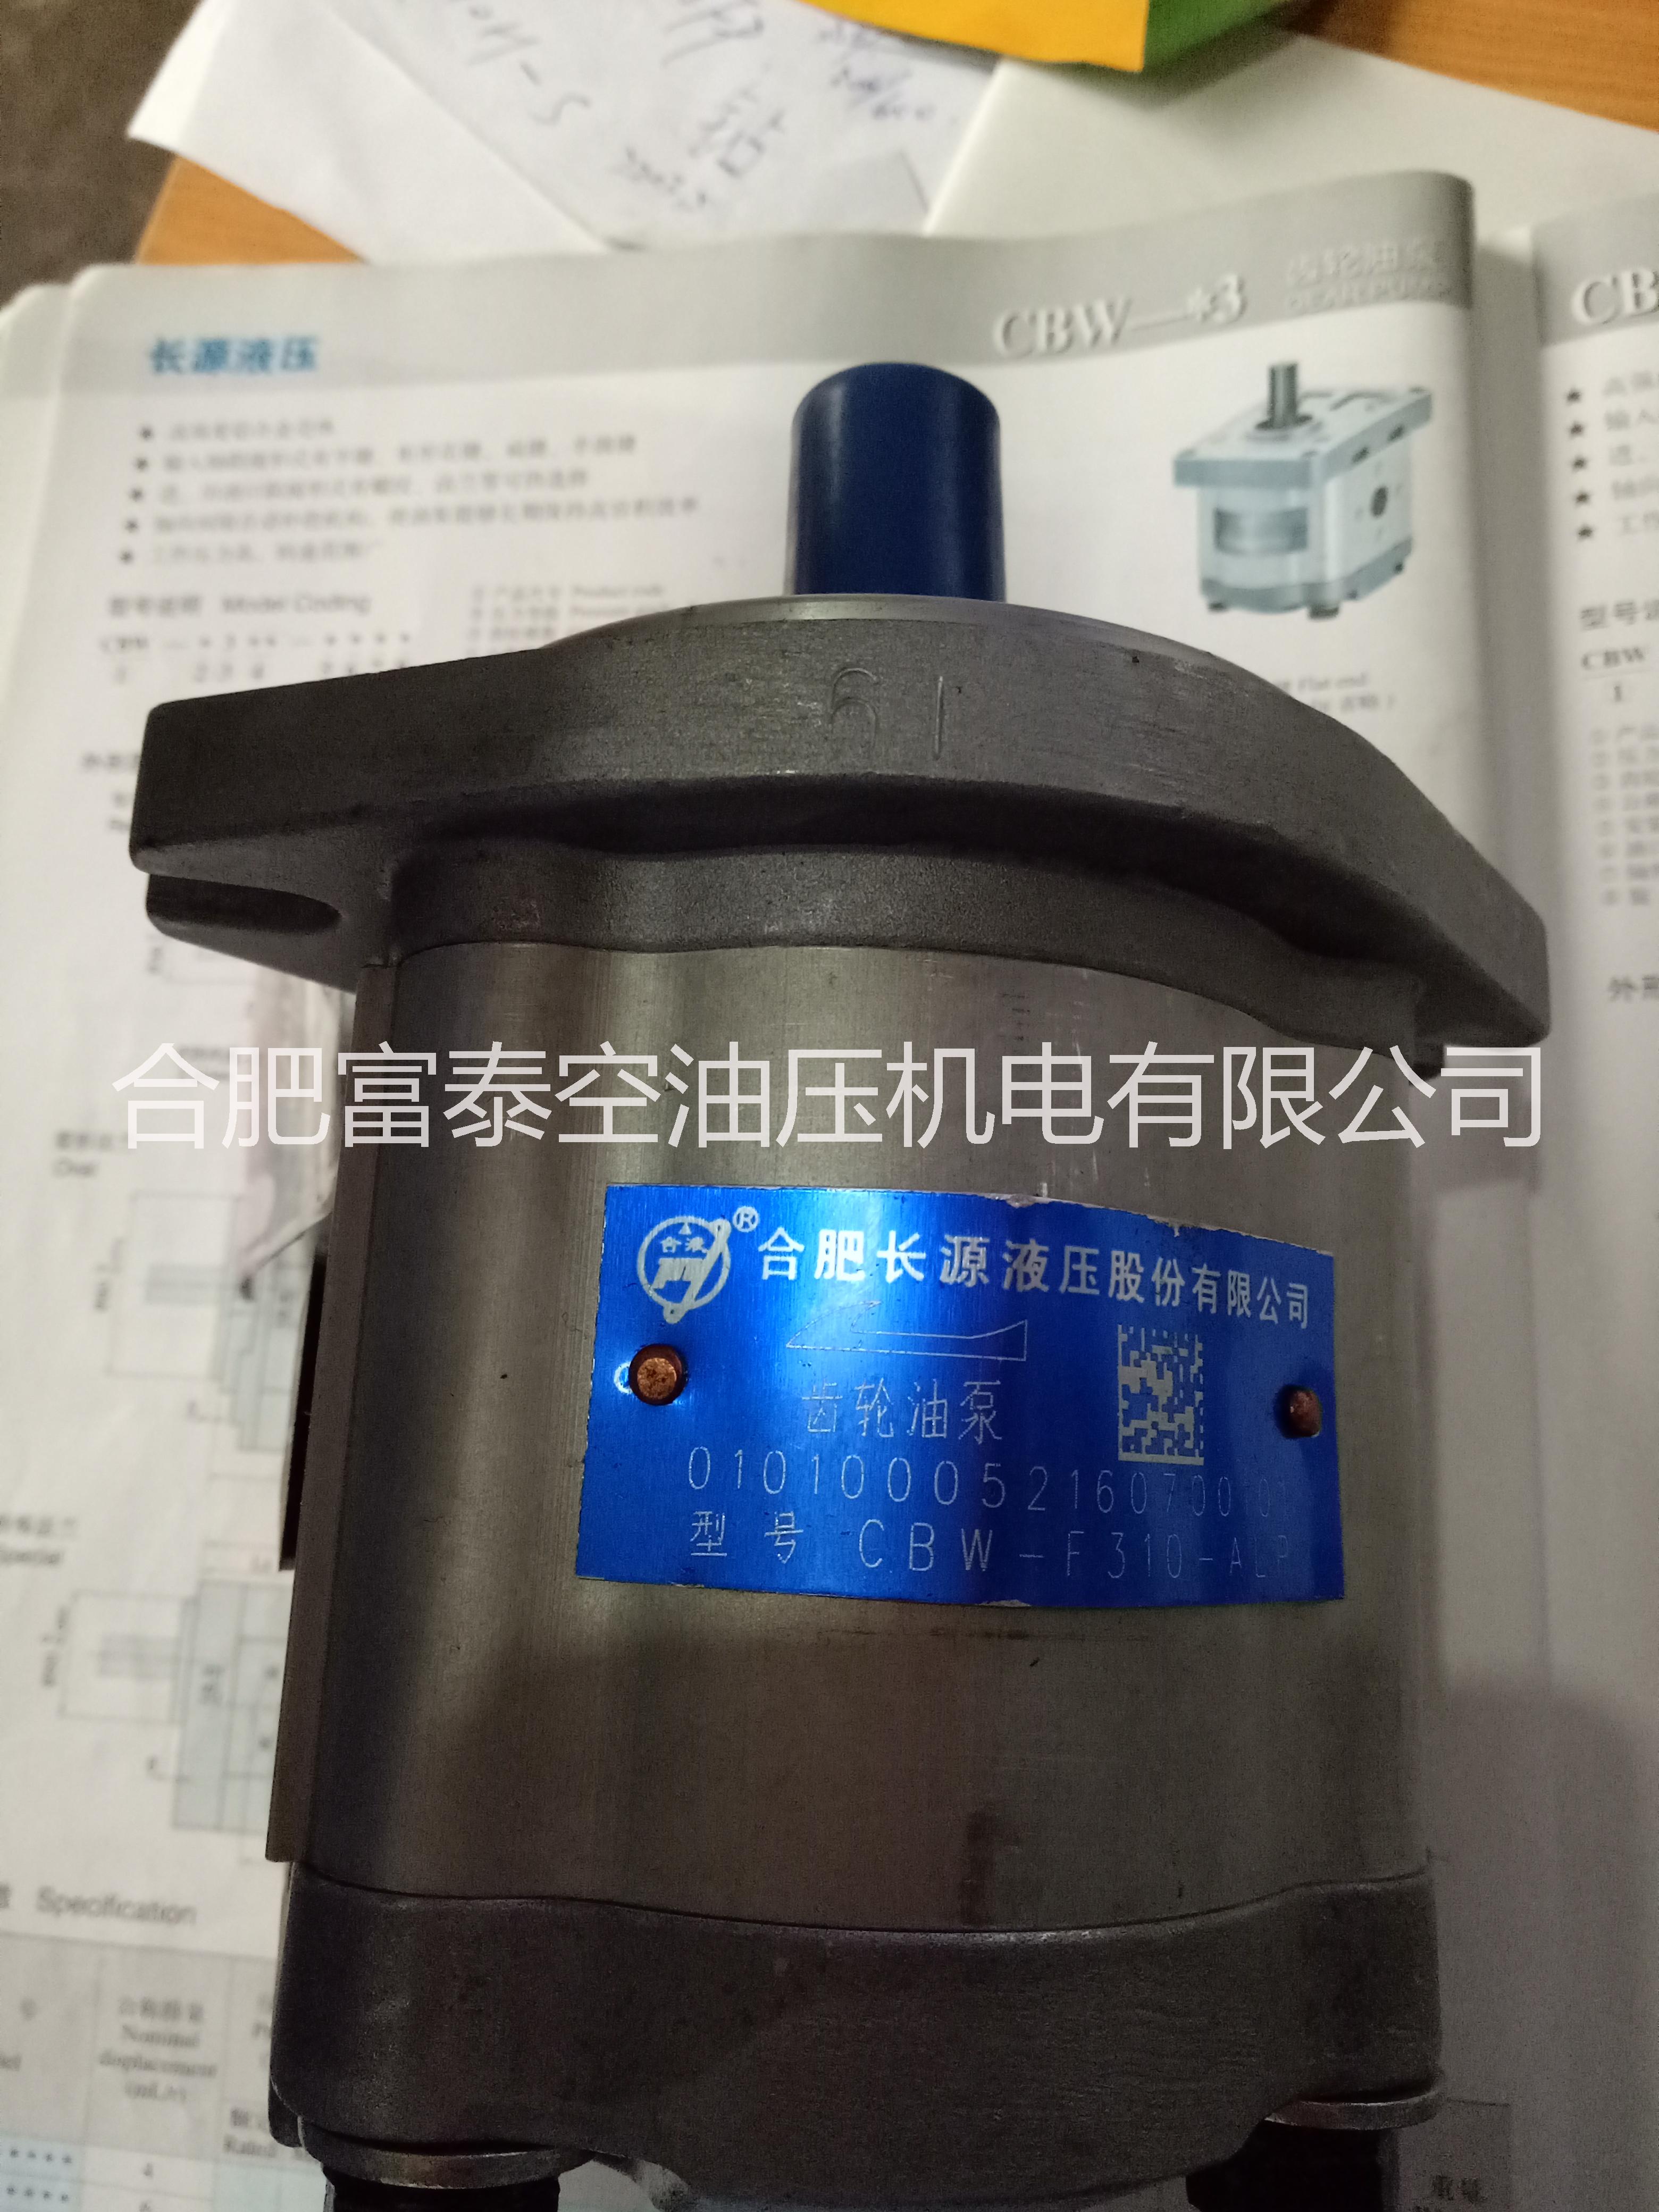 CBW-F320-ALP 合肥长源液压齿轮油泵HCHC